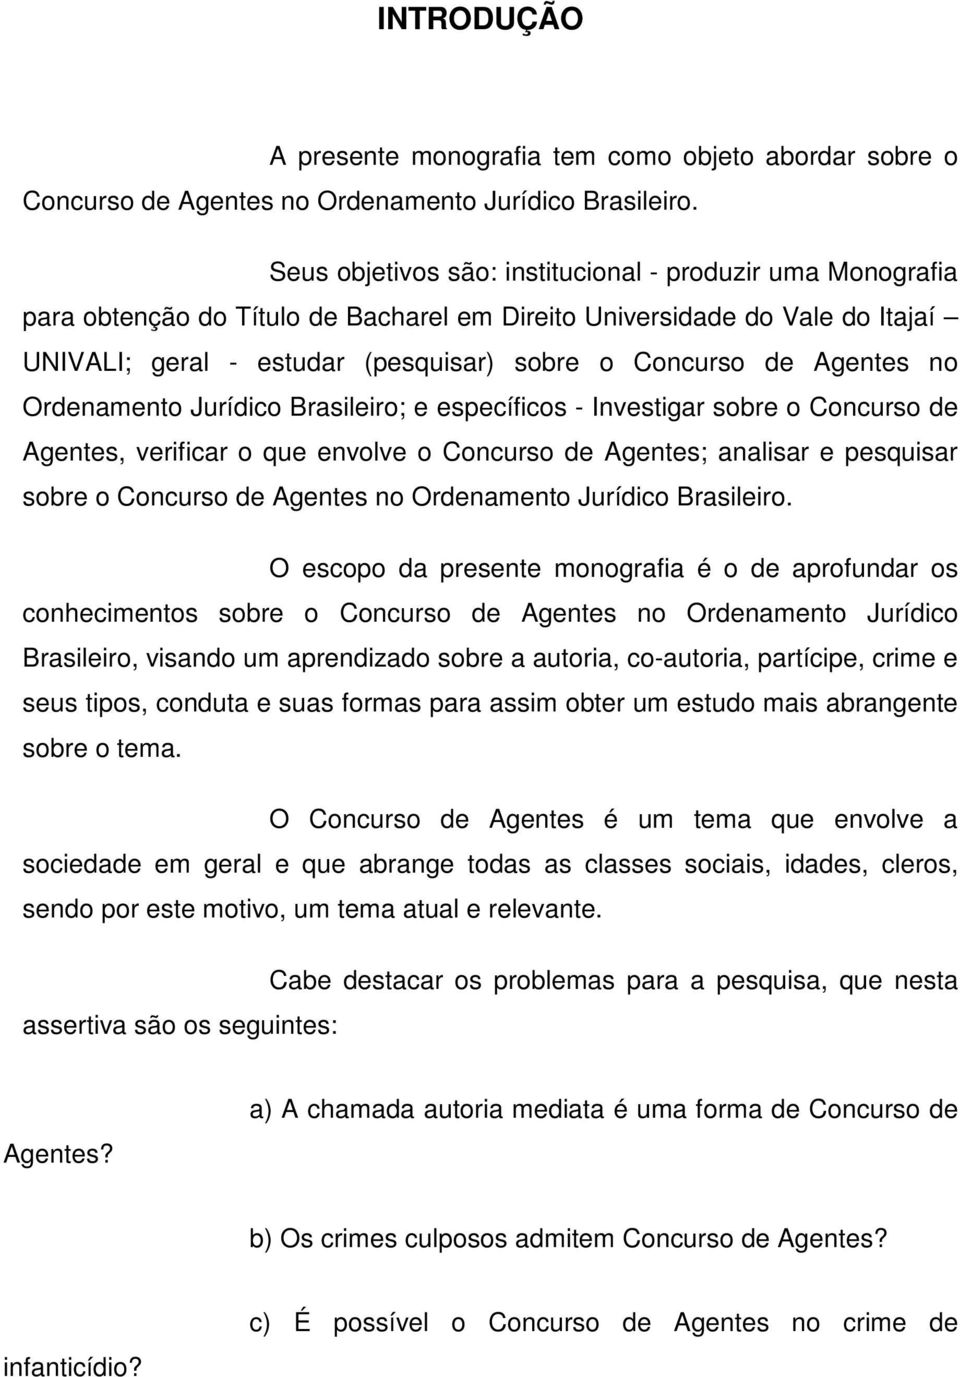 Agentes no Ordenamento Jurídico Brasileiro; e específicos - Investigar sobre o Concurso de Agentes, verificar o que envolve o Concurso de Agentes; analisar e pesquisar sobre o Concurso de Agentes no